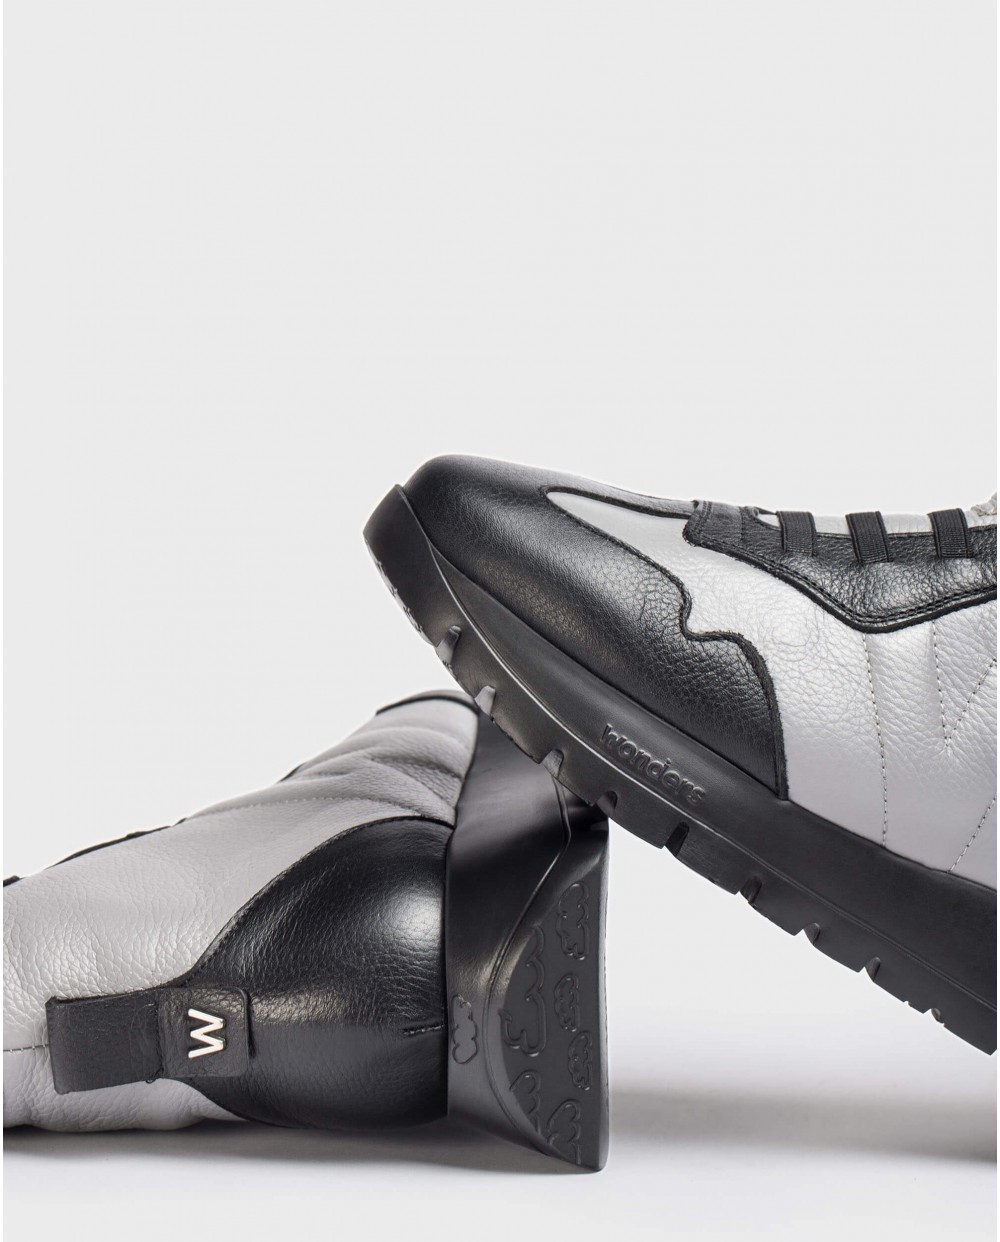 Wonders-Sneakers-England grey ankle boot